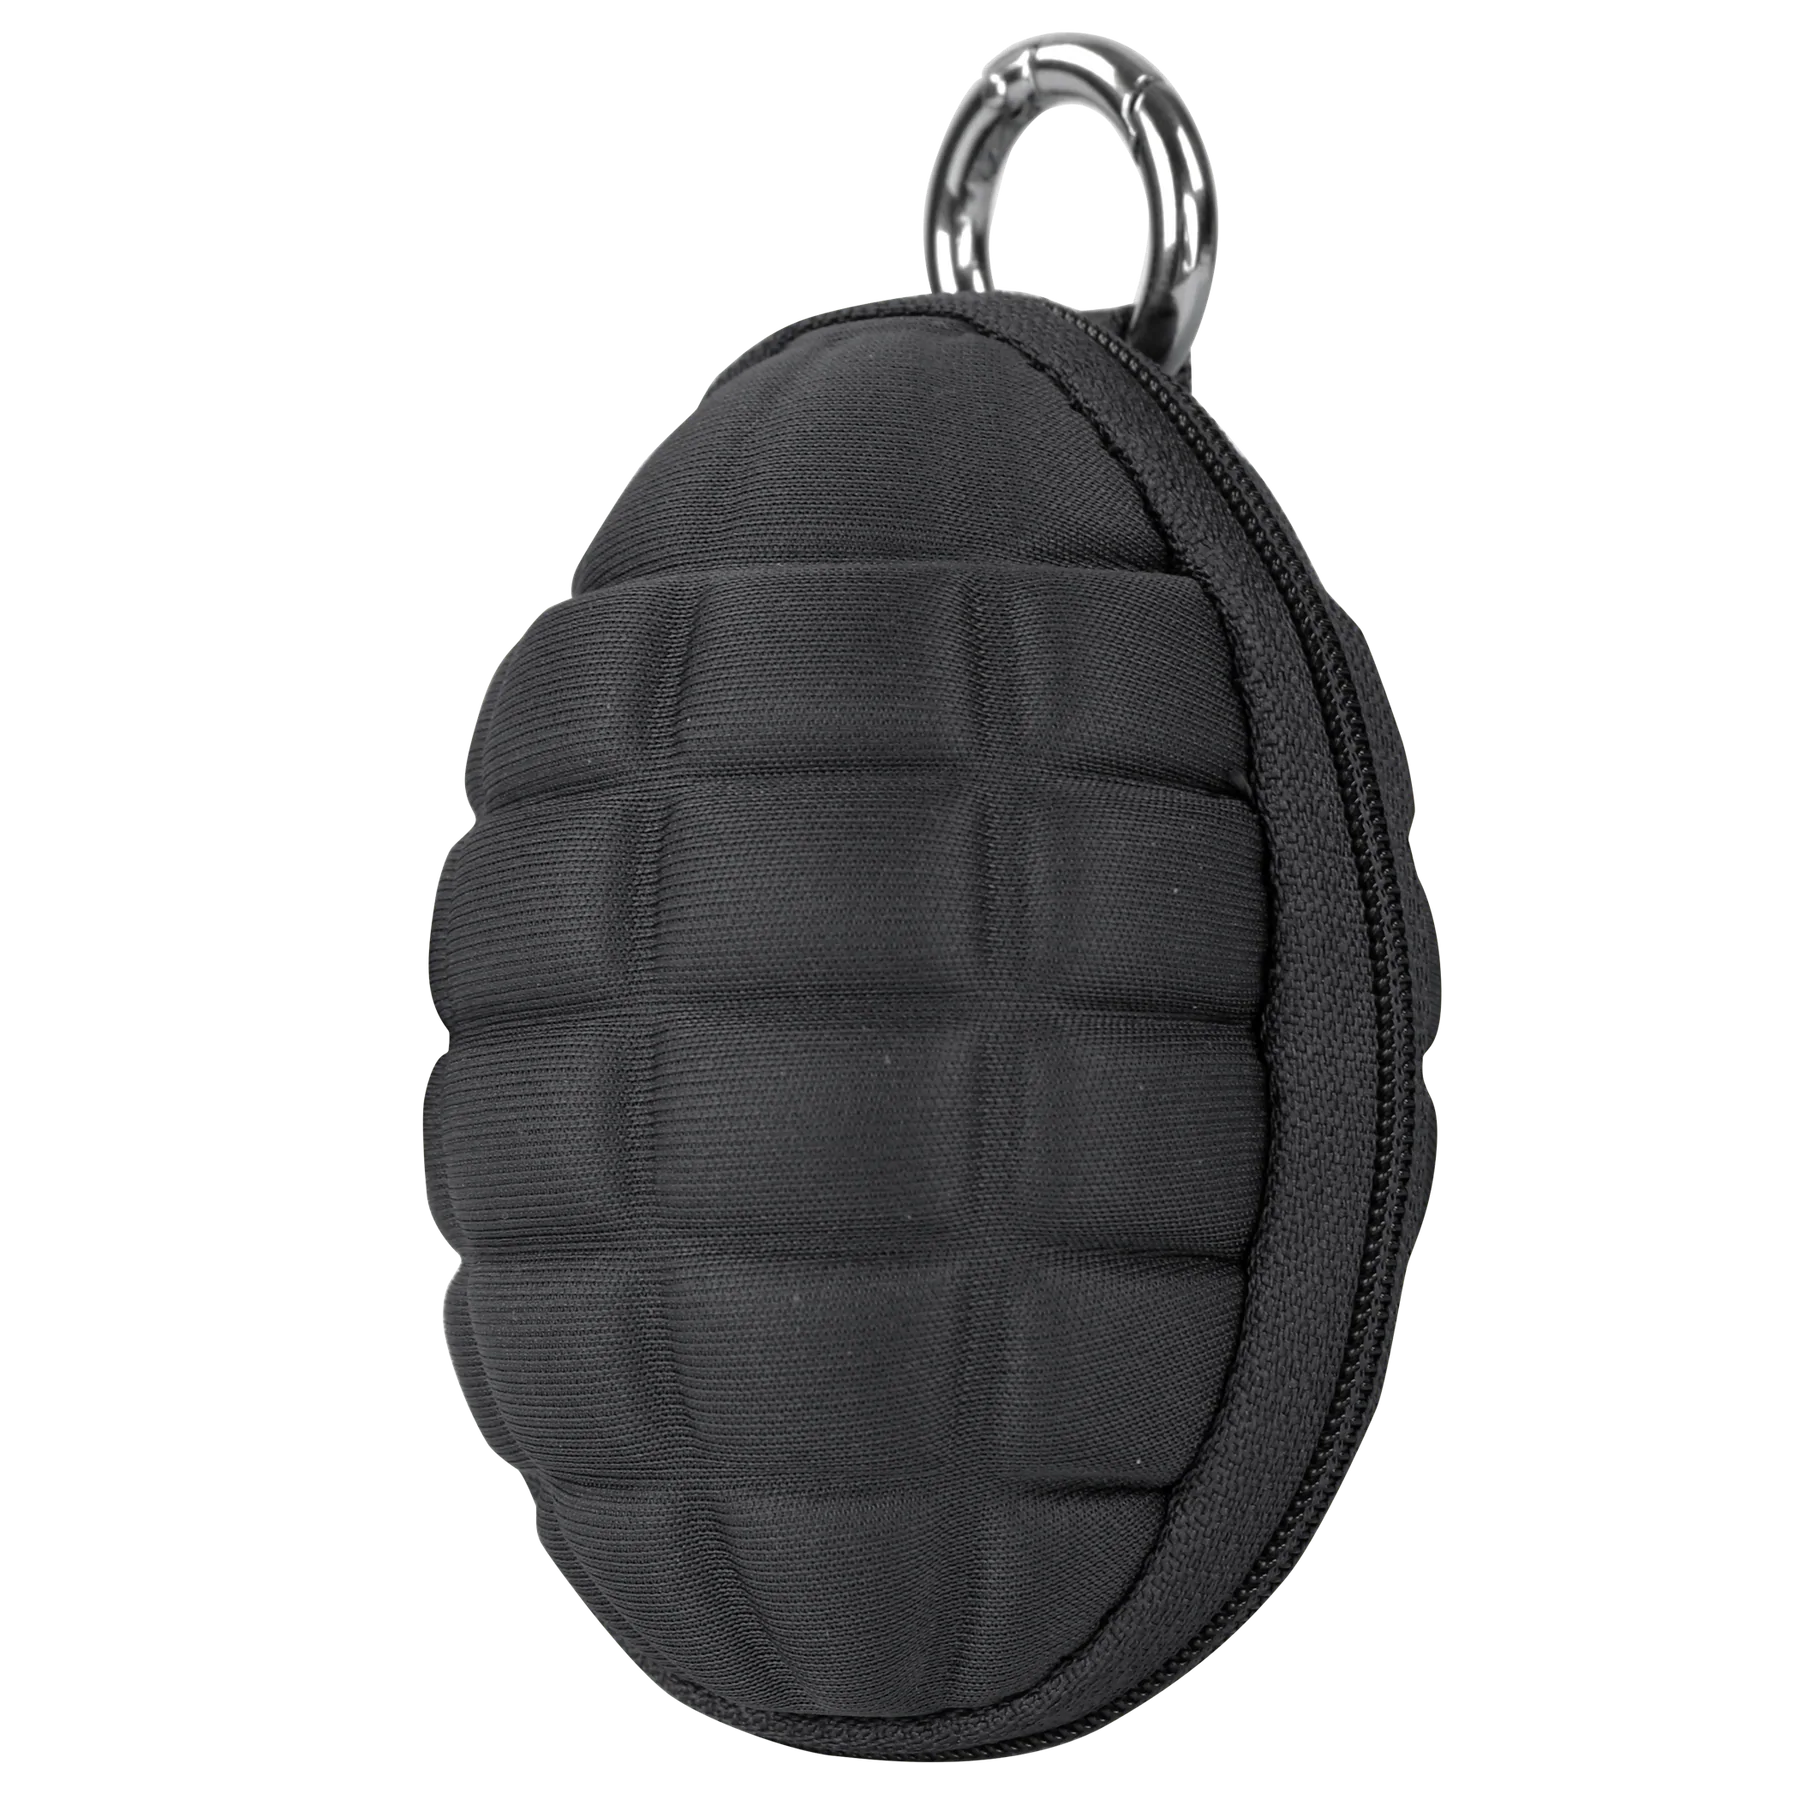 Condor Grenade Keychain Pouch – Black | Condor